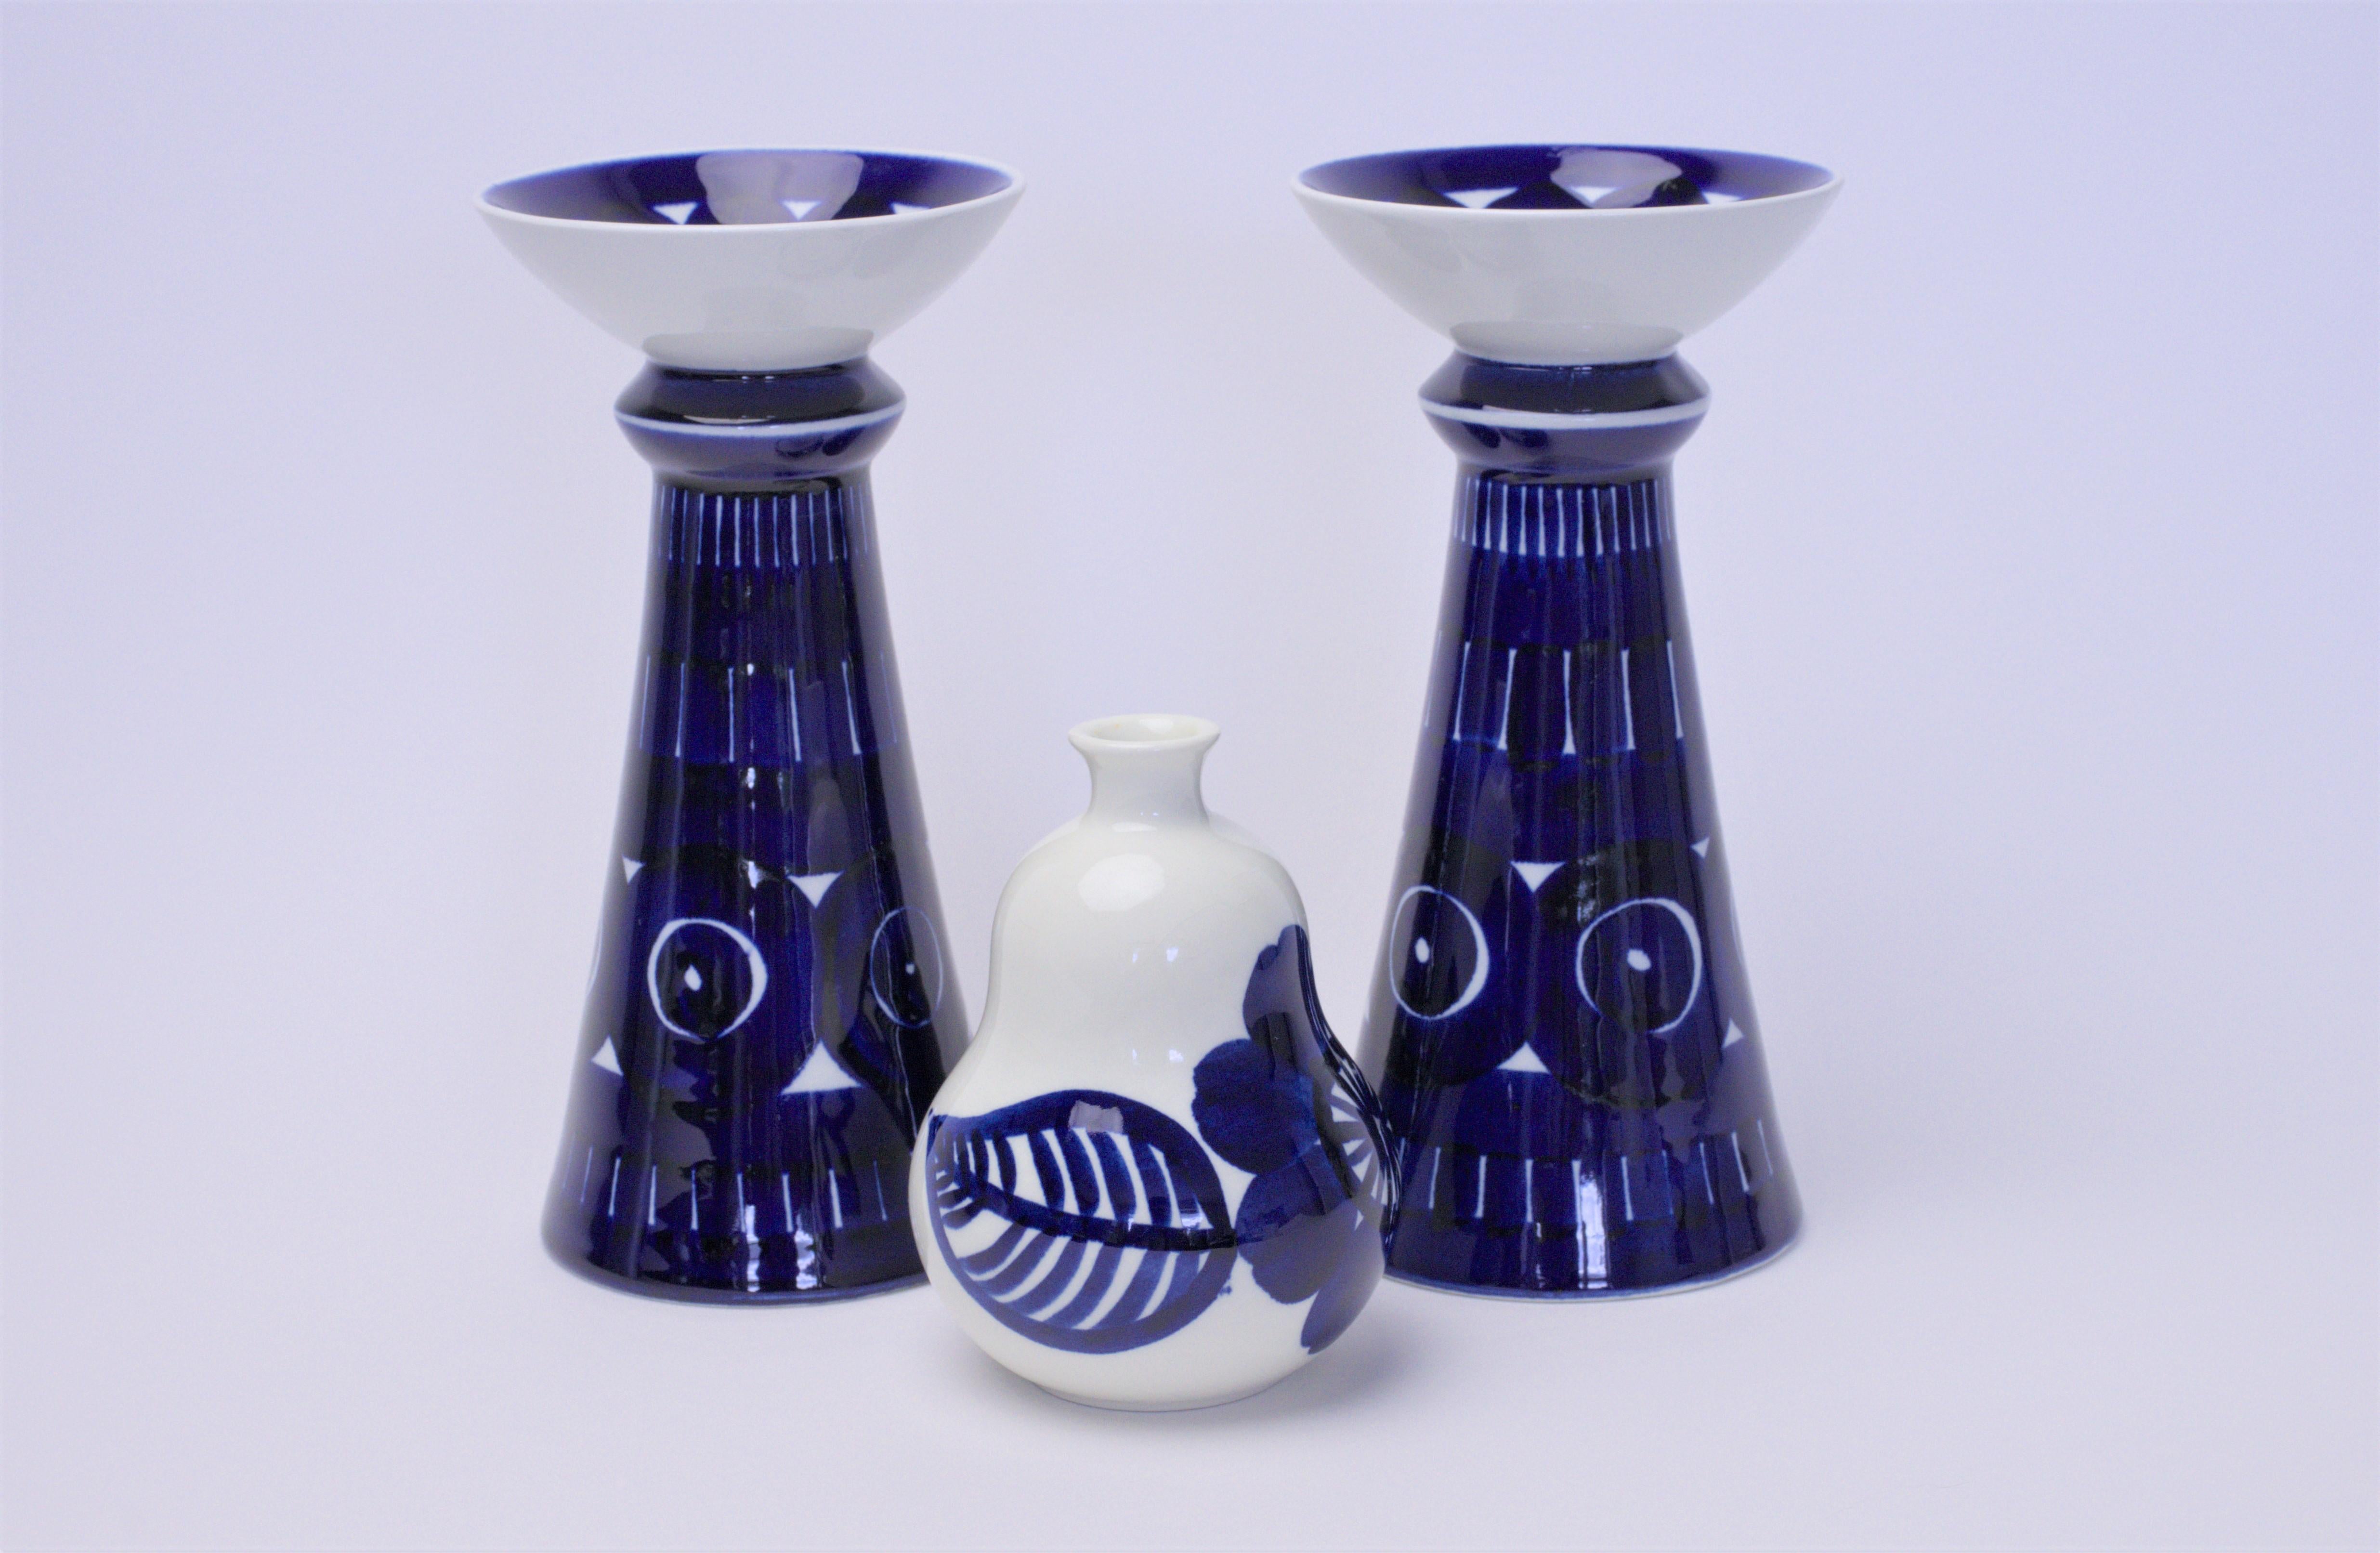 Description du produit :
Nous proposons ici deux bougeoirs conçus par Ulla Procope et un vase conçu par Gunvor Olin-Grönqvist pour Arabia Finland. Ce vase fait partie de la série Köökki, qui comprend d'autres articles tels que des planches à